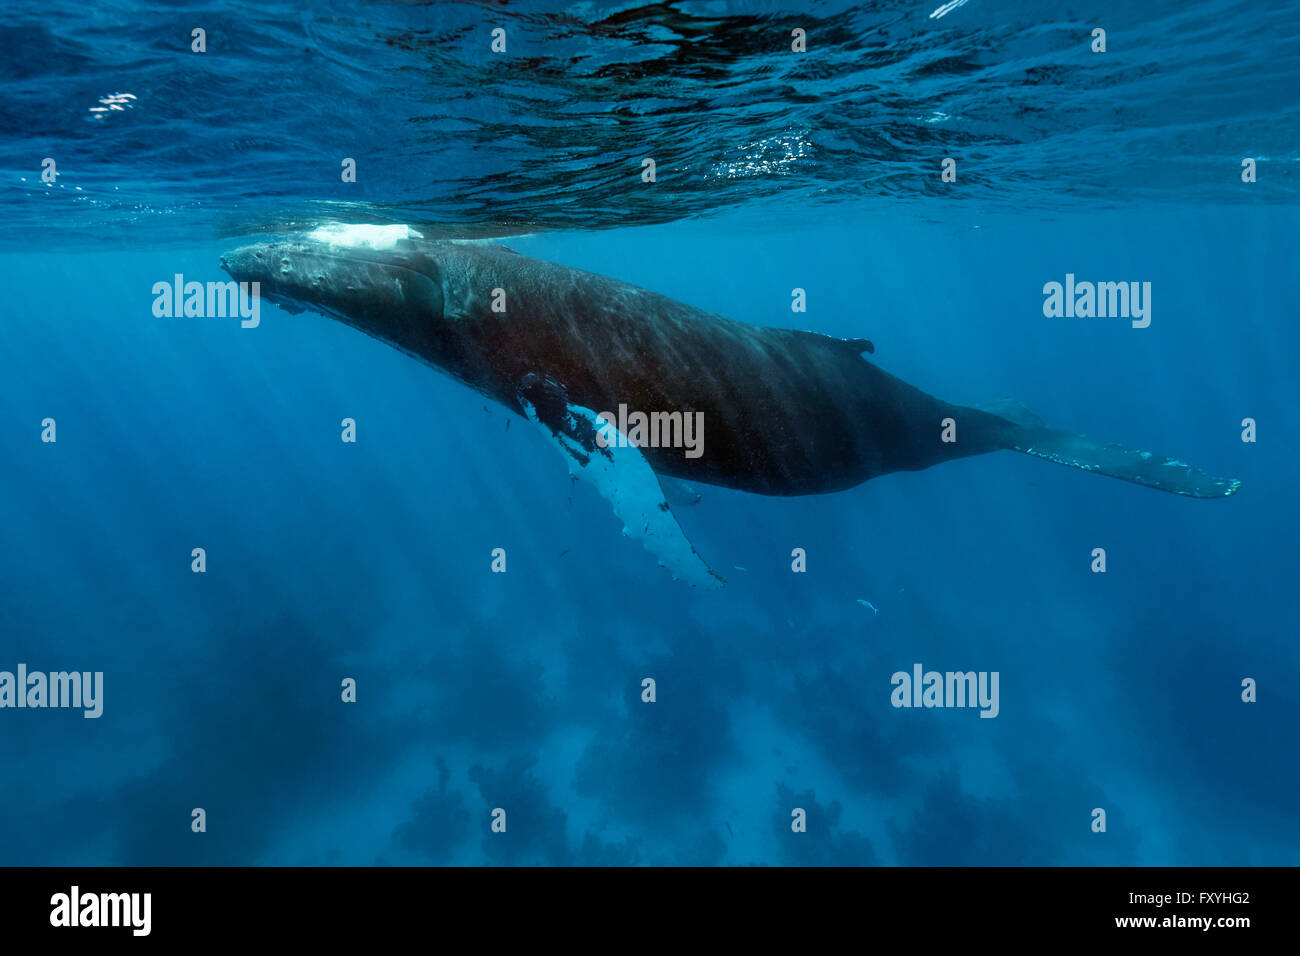 La ballena jorobada (Megaptera novaeangliae) a lo largo de arrecifes de coral, de Banco de plata, plata y Navidad Bank Santuario, Océano Atlántico Foto de stock